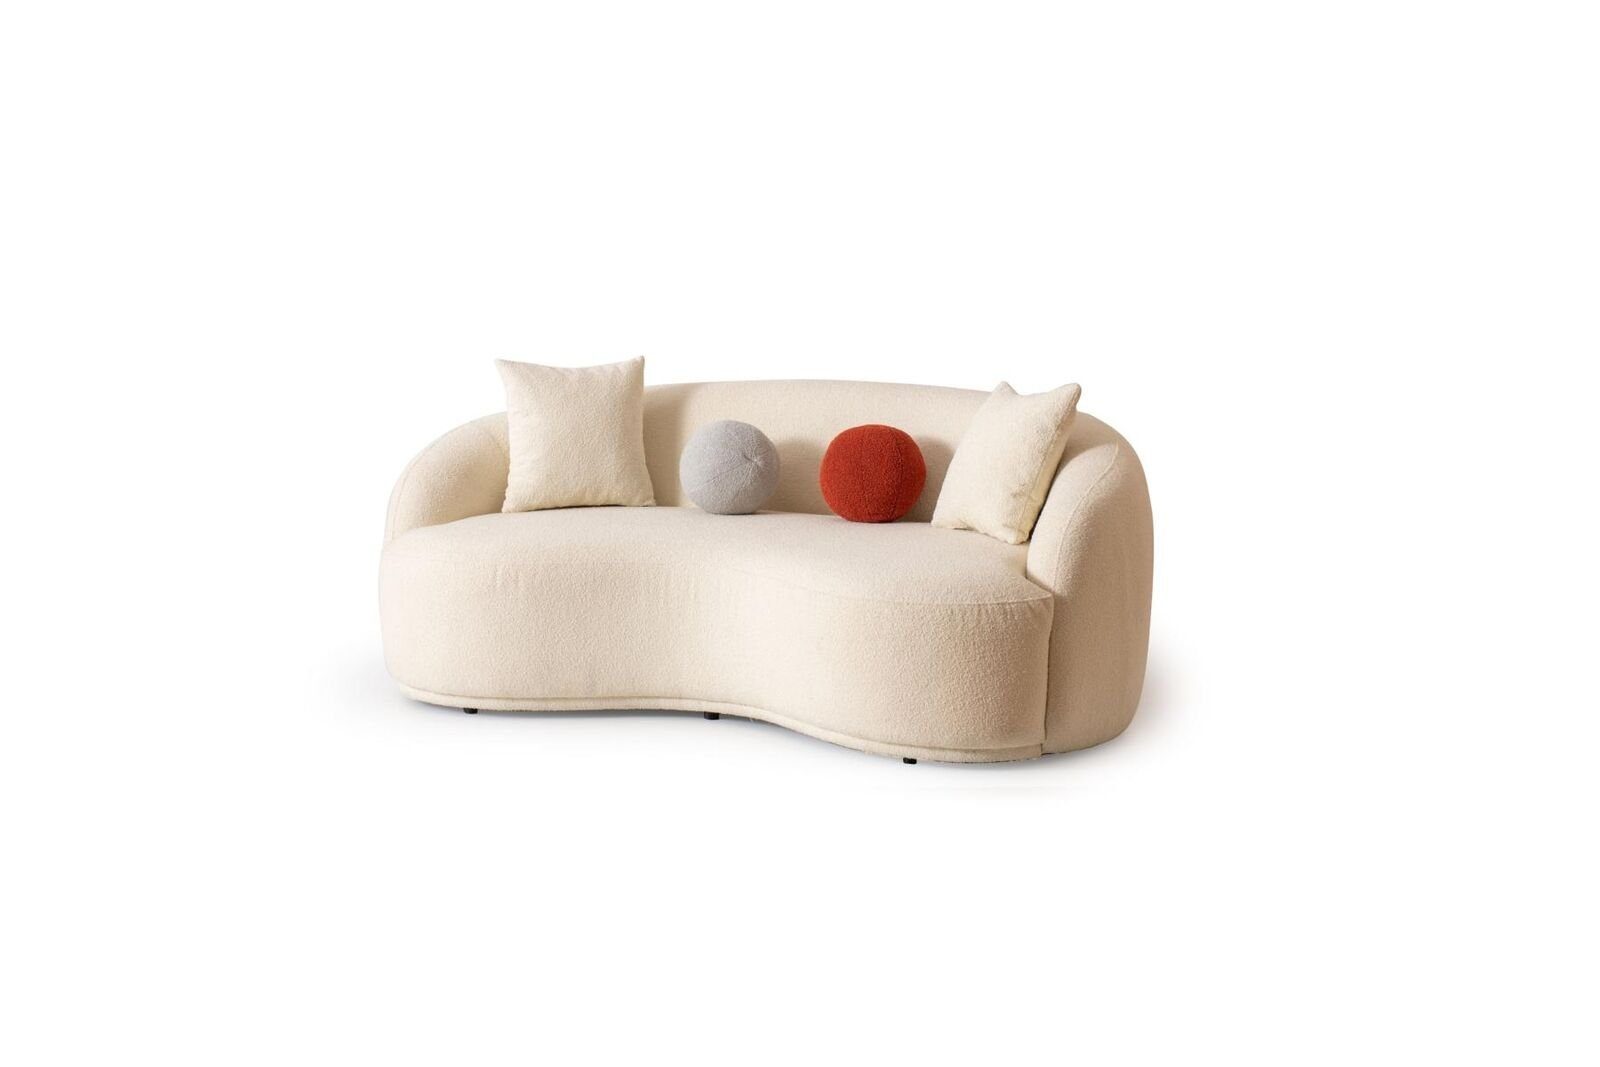 JVmoebel 3-Sitzer Modern Sofa 3 - Sitzer Designer Möbel Weiße Farbe Stil Couchen Sofas, 1 Teile, Made in Europa